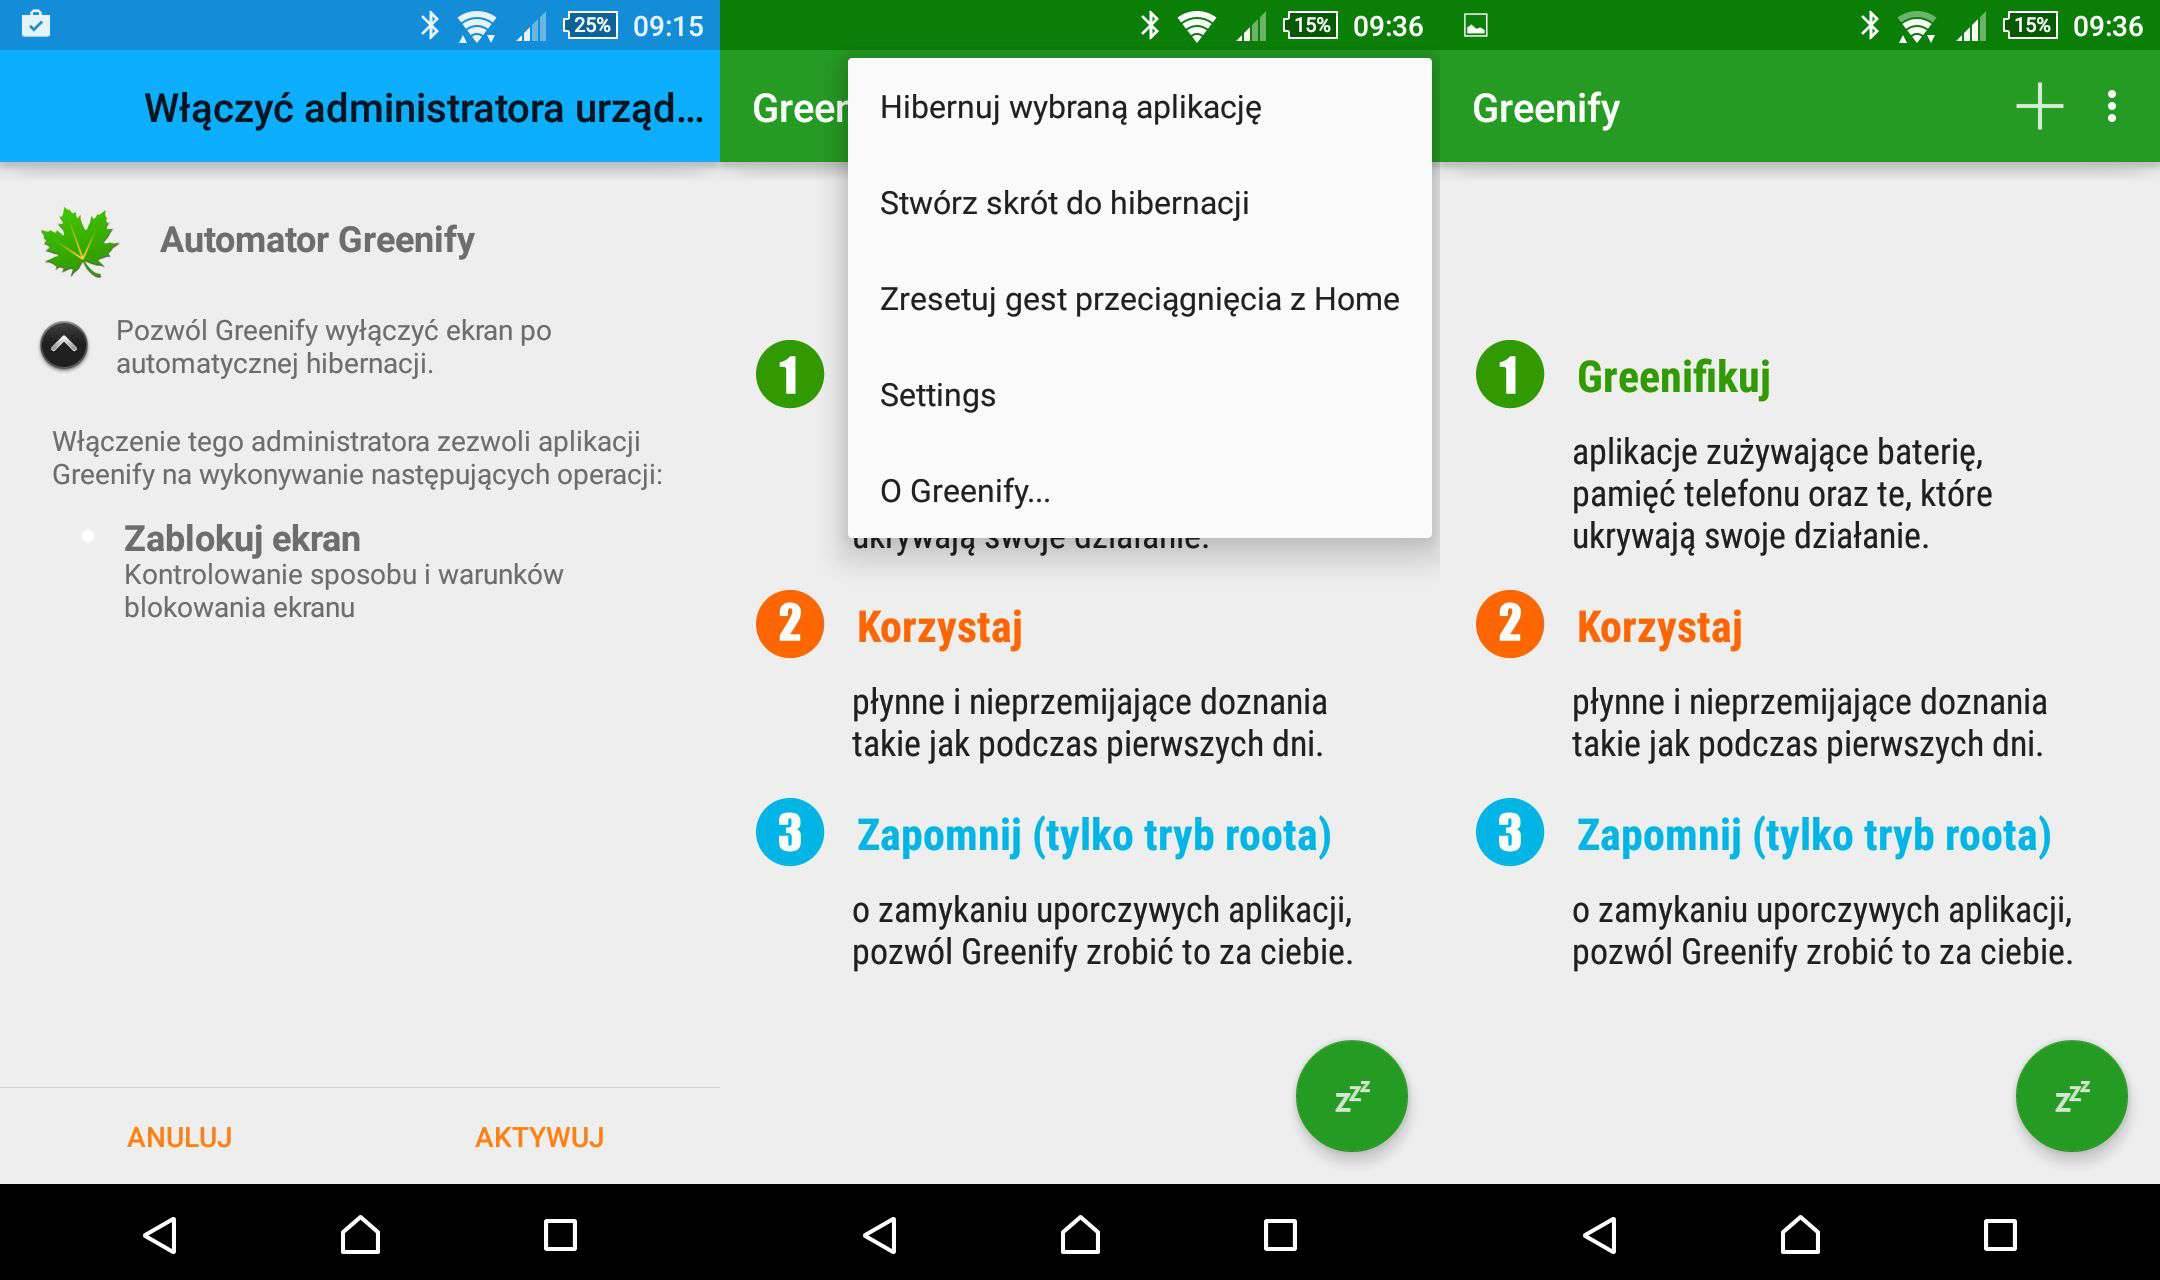 Greenify - recenzja aplikacji gry-i-aplikacje Recenzja, polska recenzja Greenify, Greenify, Android  Podejrzewam, że większości z was bateria w urządzeniu mobilnym rozładowała się szybciej, niż zakładaliście, szczególnie użytkownicy Androida wiedzą, o czym mowa. uLxbLOv